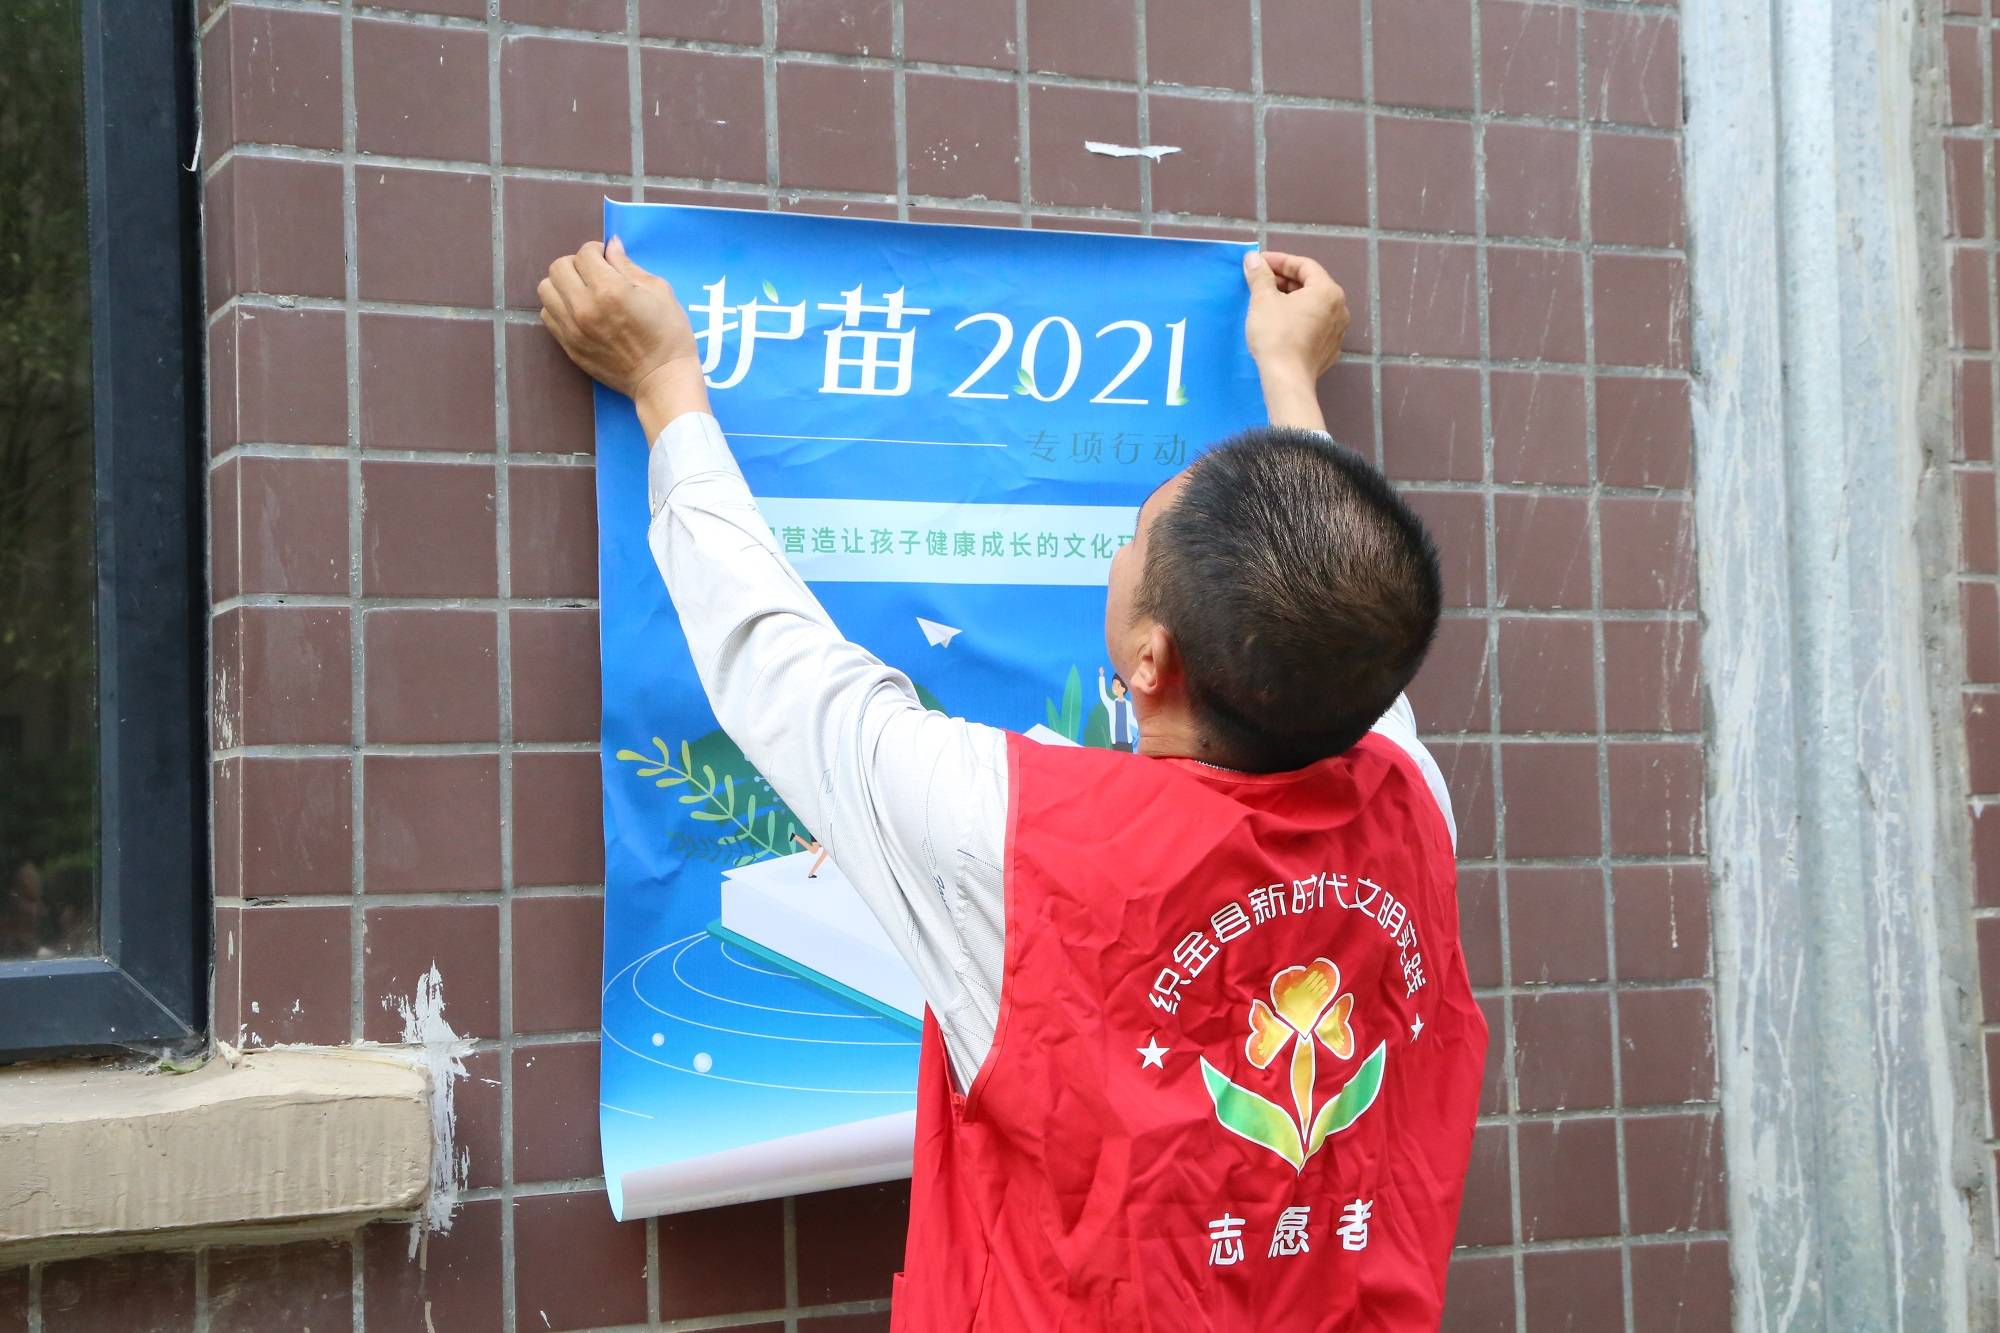 织金县惠民街道:护苗2021专项行动,营造良好文化环境